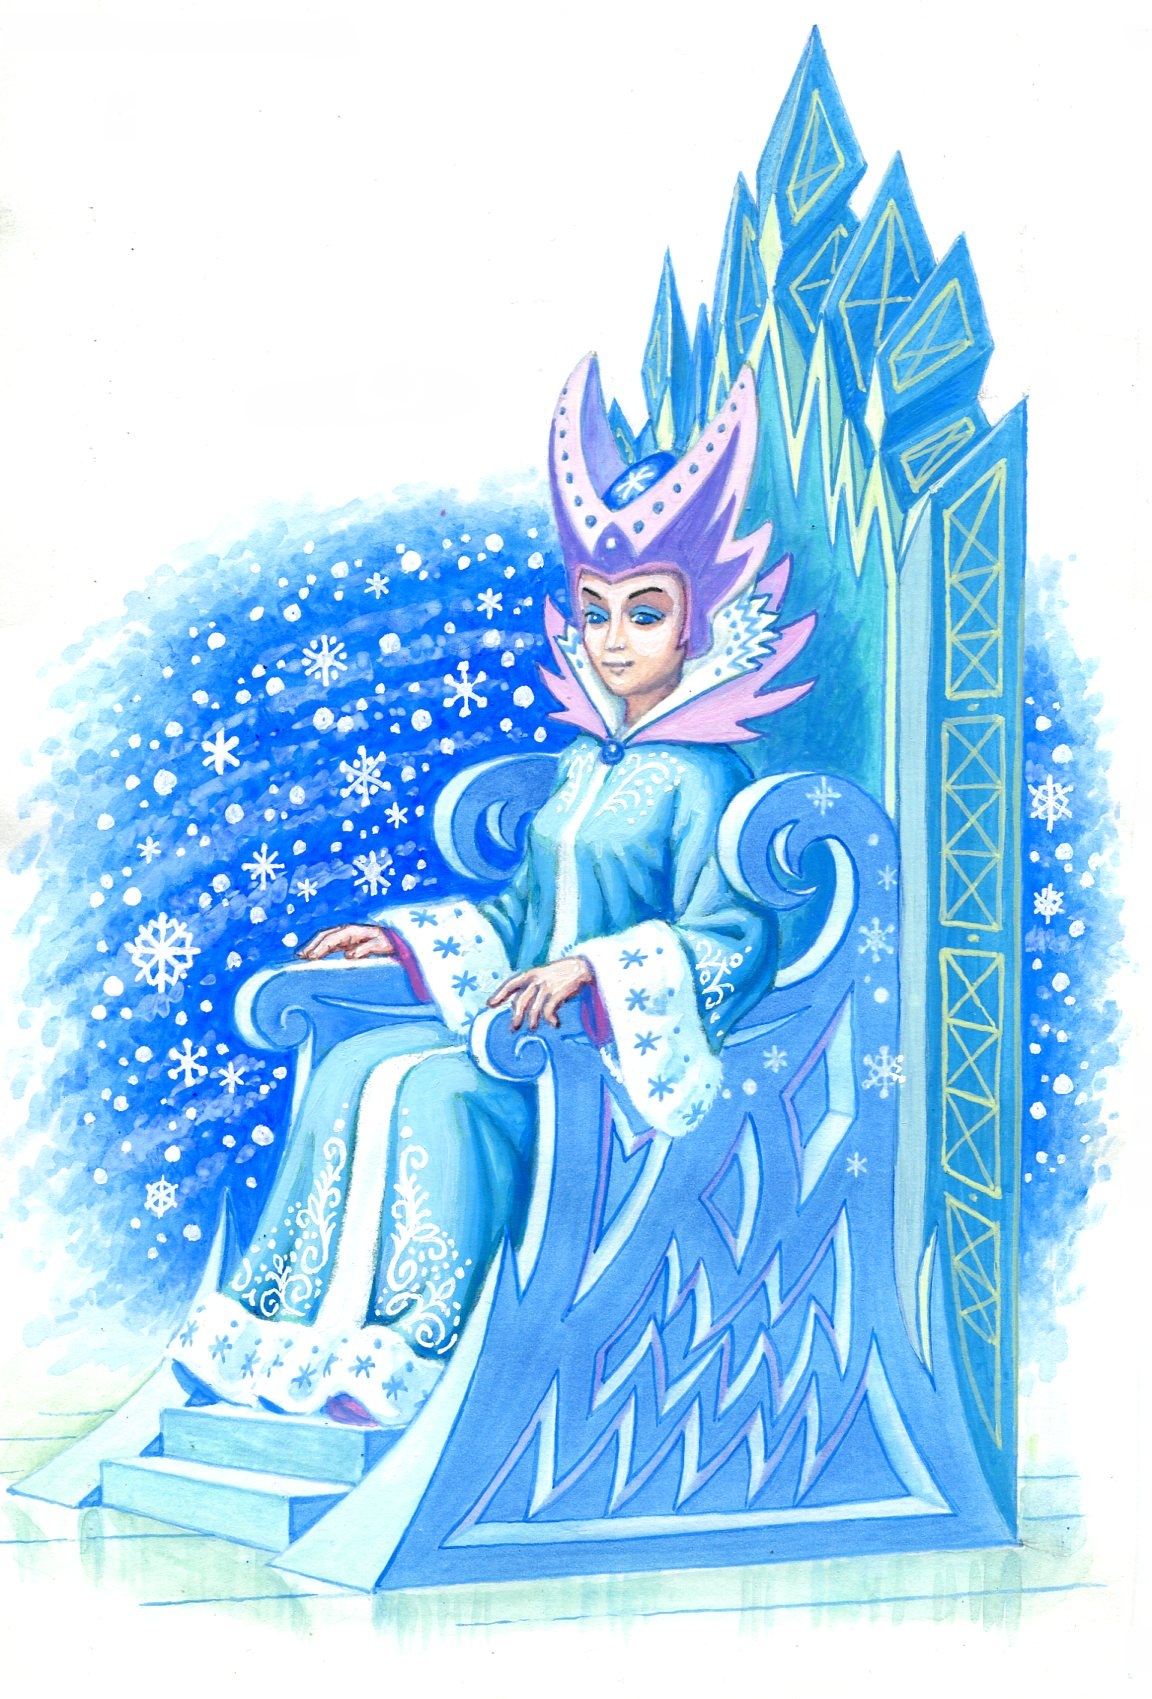 Рисунок по сказке снежная королева 5 класс очень легкий